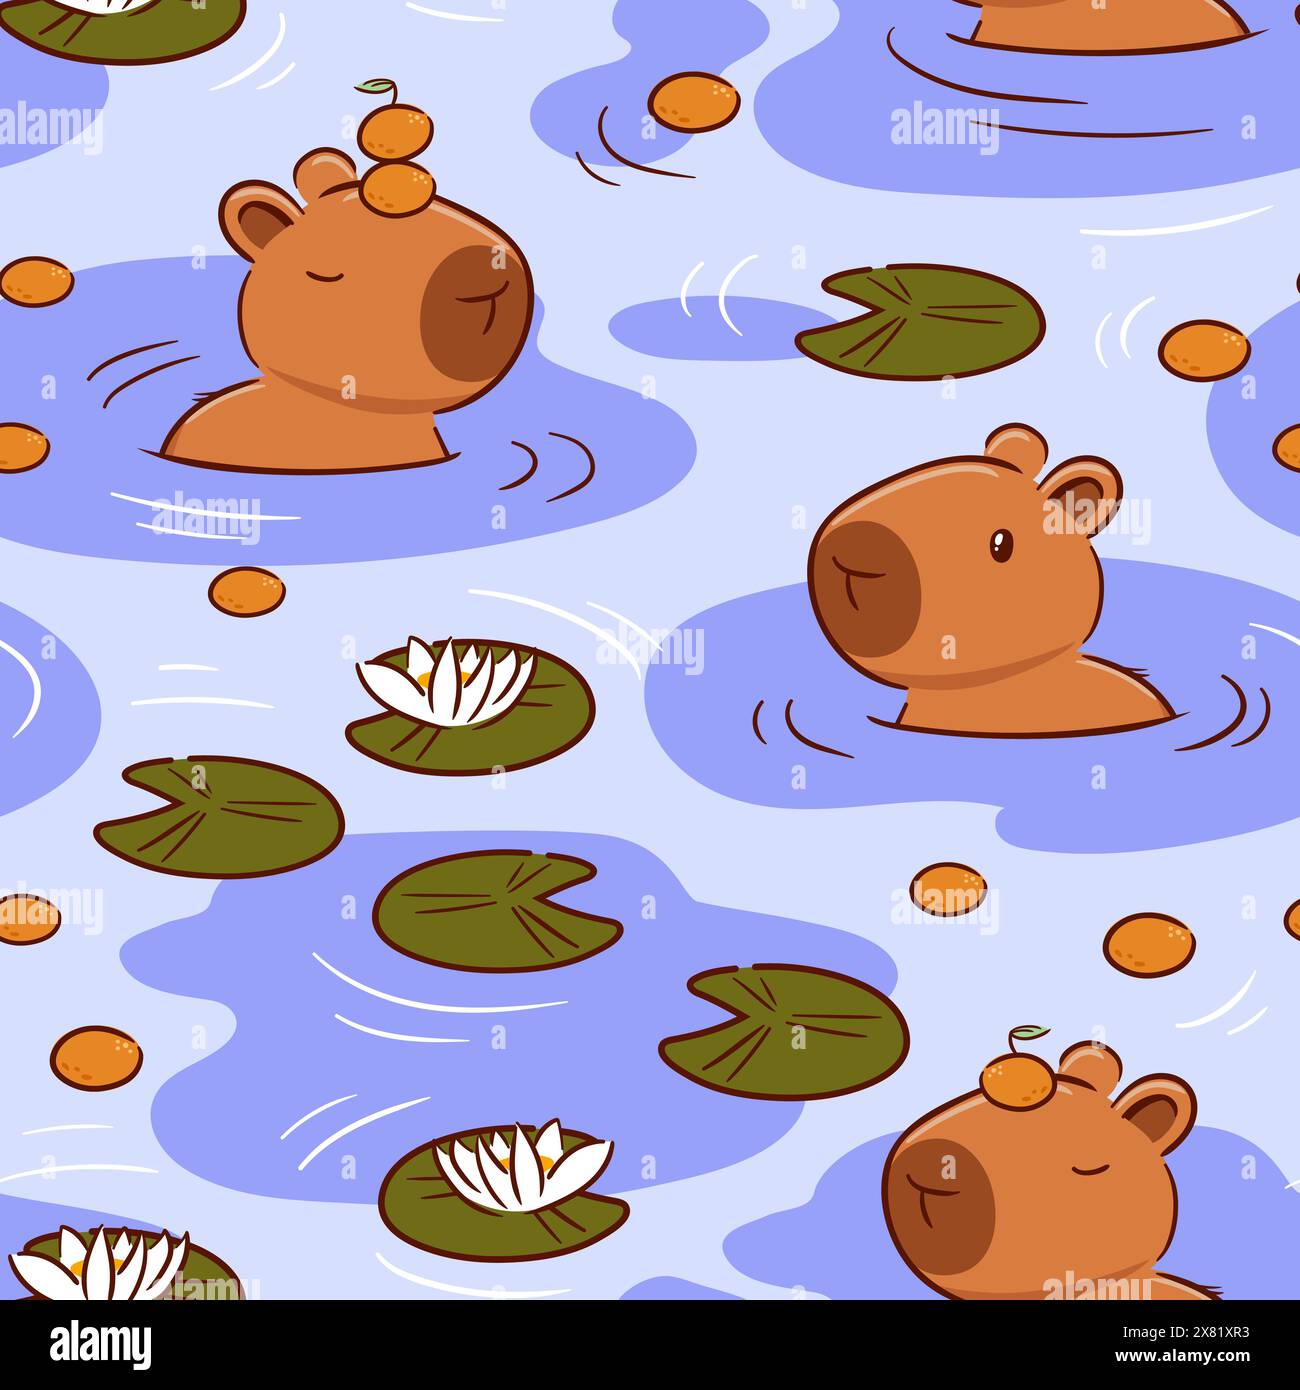 Carino capybara con un mandarino sulla testa in stile kawaii asiatico. Personaggio dei cartoni animati. Divertente illustrazione vettoriale per adesivi, logo, mascotte, isolata Illustrazione Vettoriale